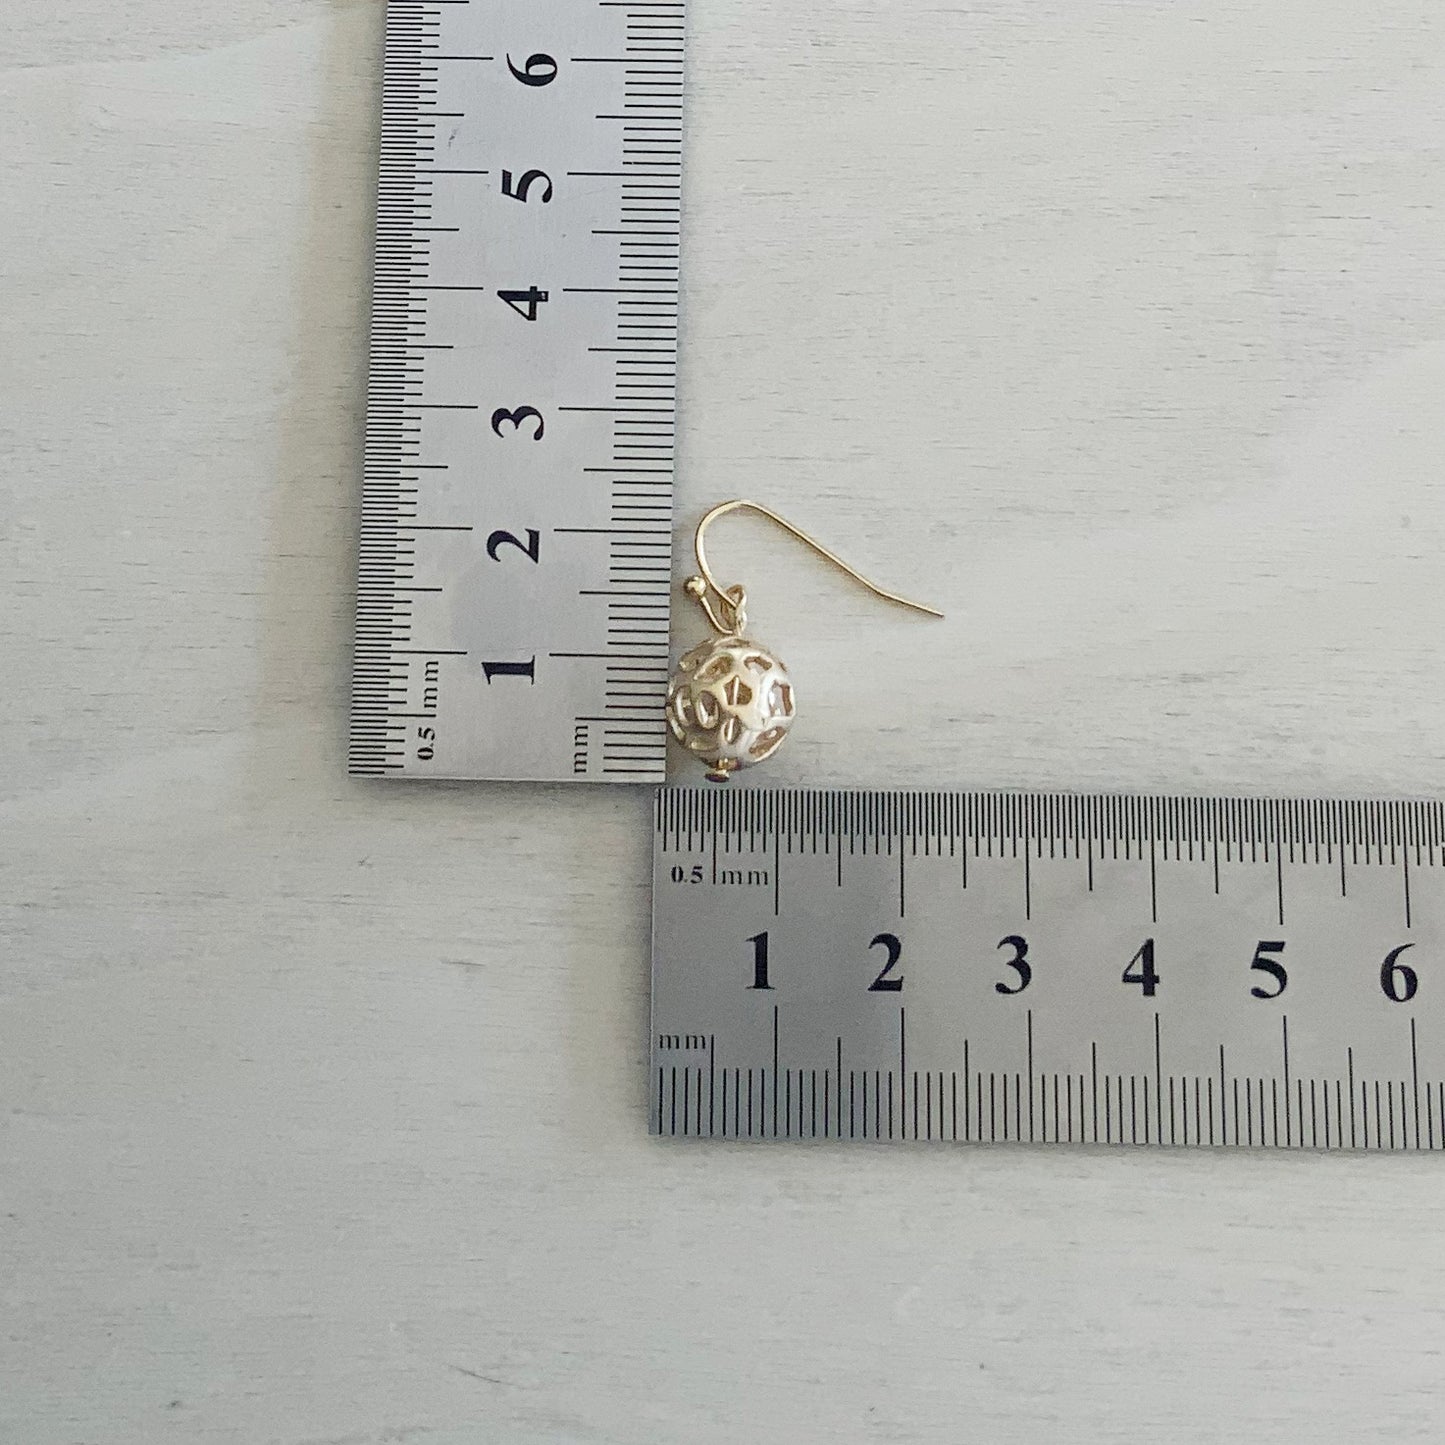 Sphere Earring Set - Gold